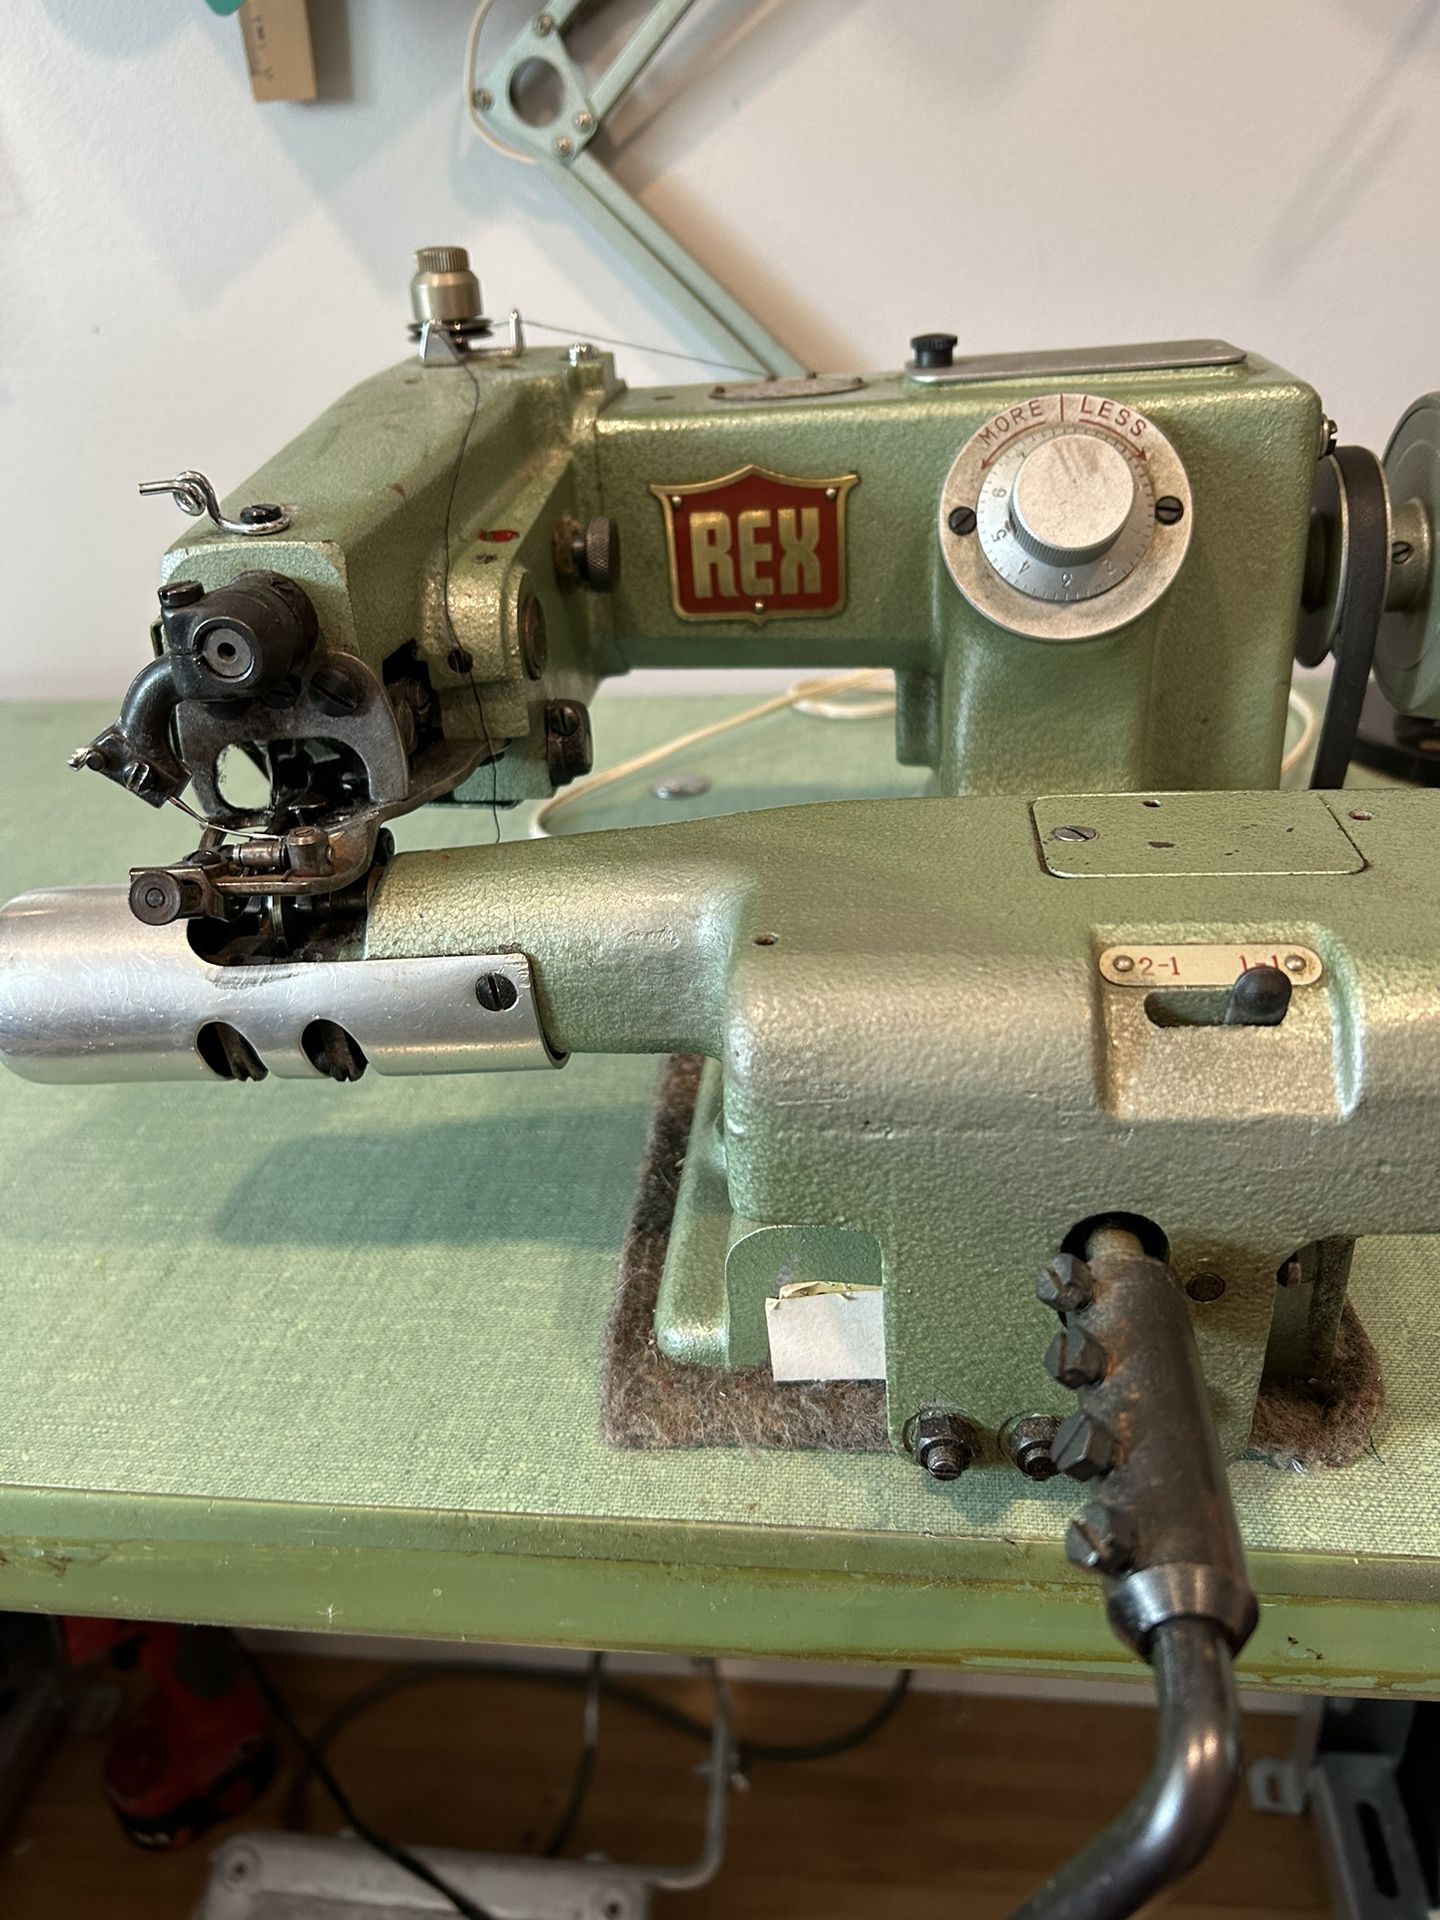 Rex Blind Stitch Sewing Machine 